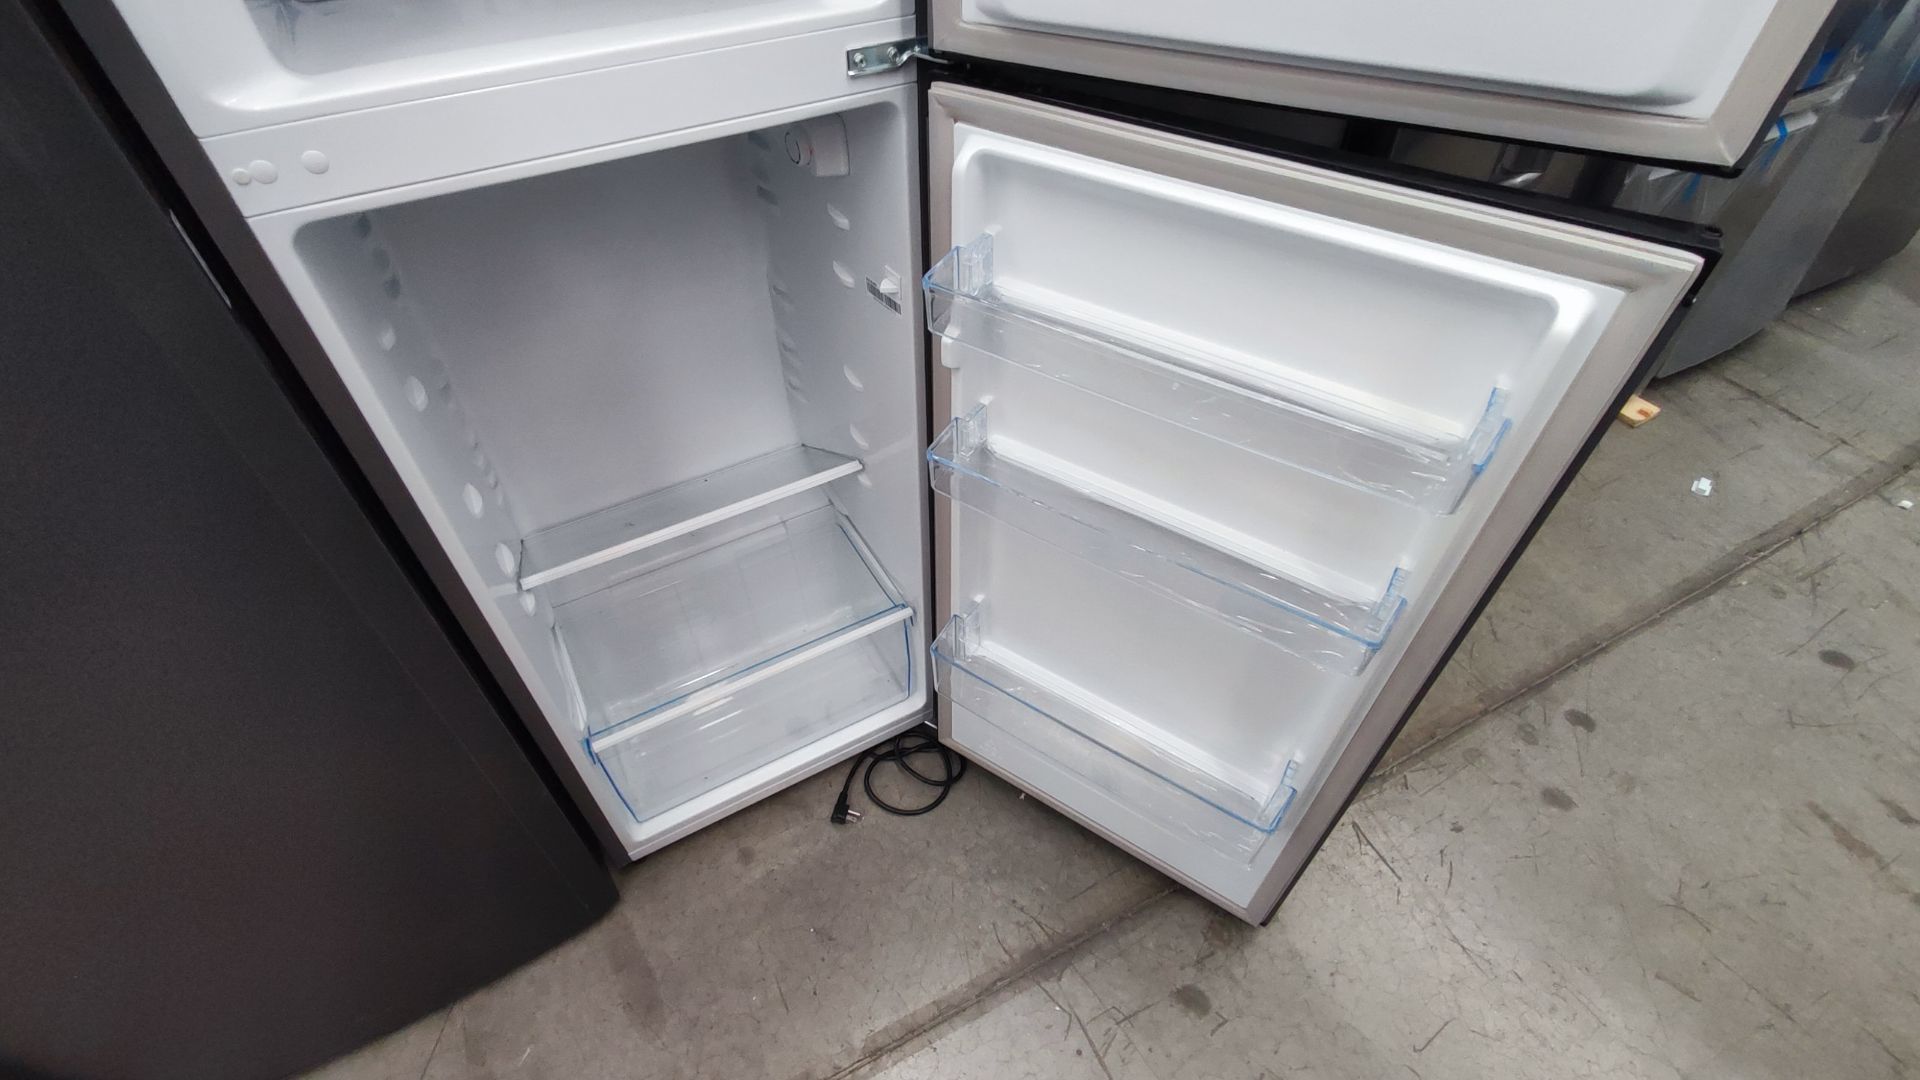 Lote de 2 Refrigeradores, Contiene; 1 Refrigerador Marca Hisense, Modelo BCYNY, Serie 1B0205Z0080JB - Image 10 of 11